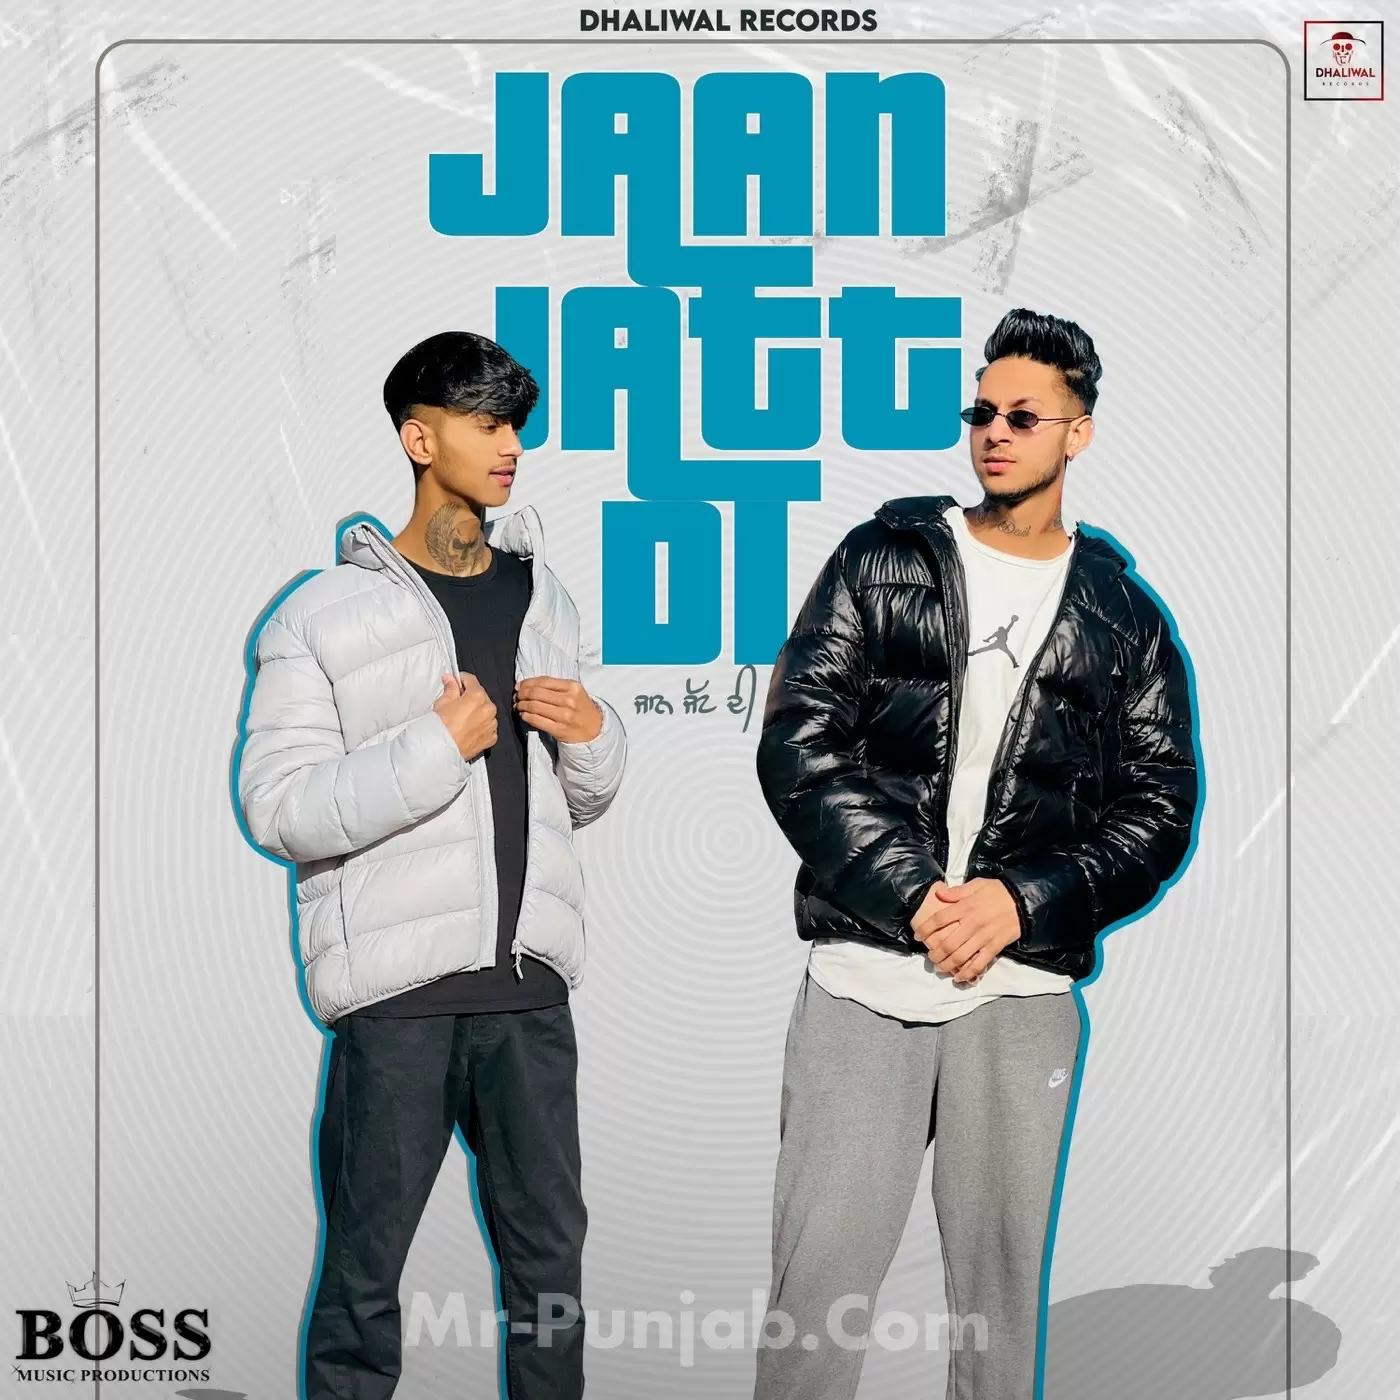 Jaan Jatt Di Dilawar Dhaliwal Mp3 Download Song - Mr-Punjab